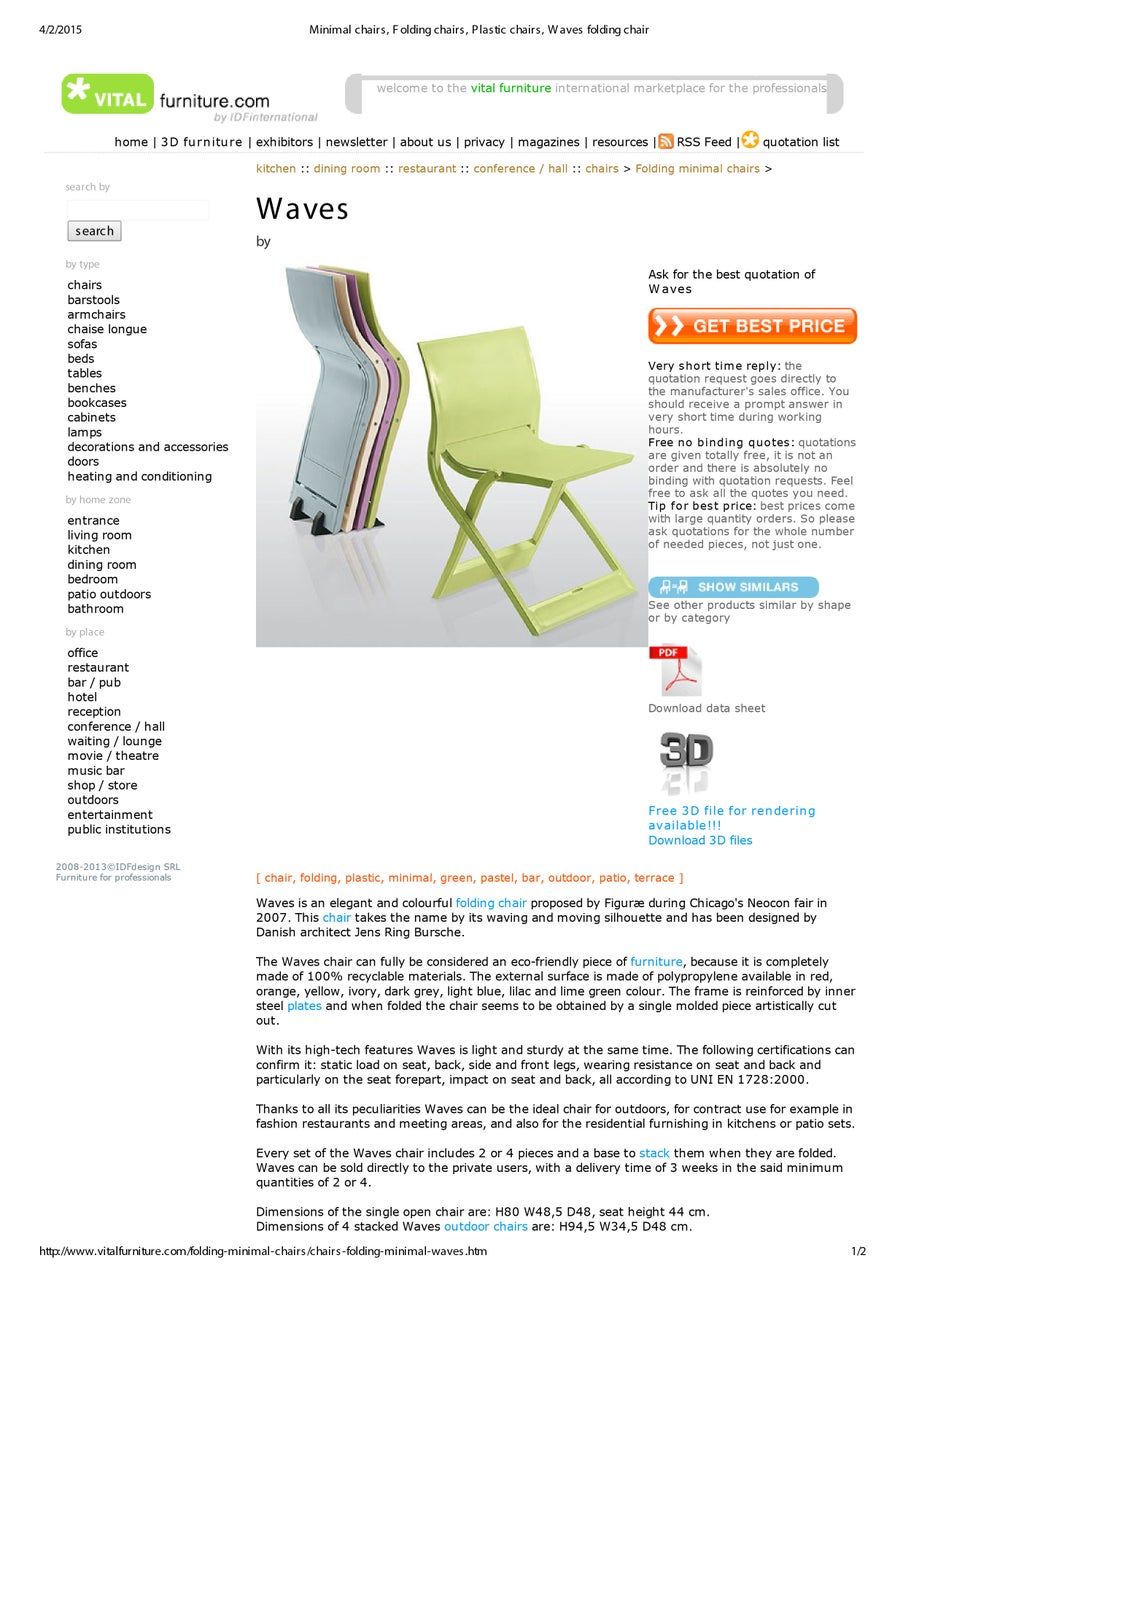 Anden arkitekt, Waves Chair, Stol / Spisestuestol – dba.dk – Køb